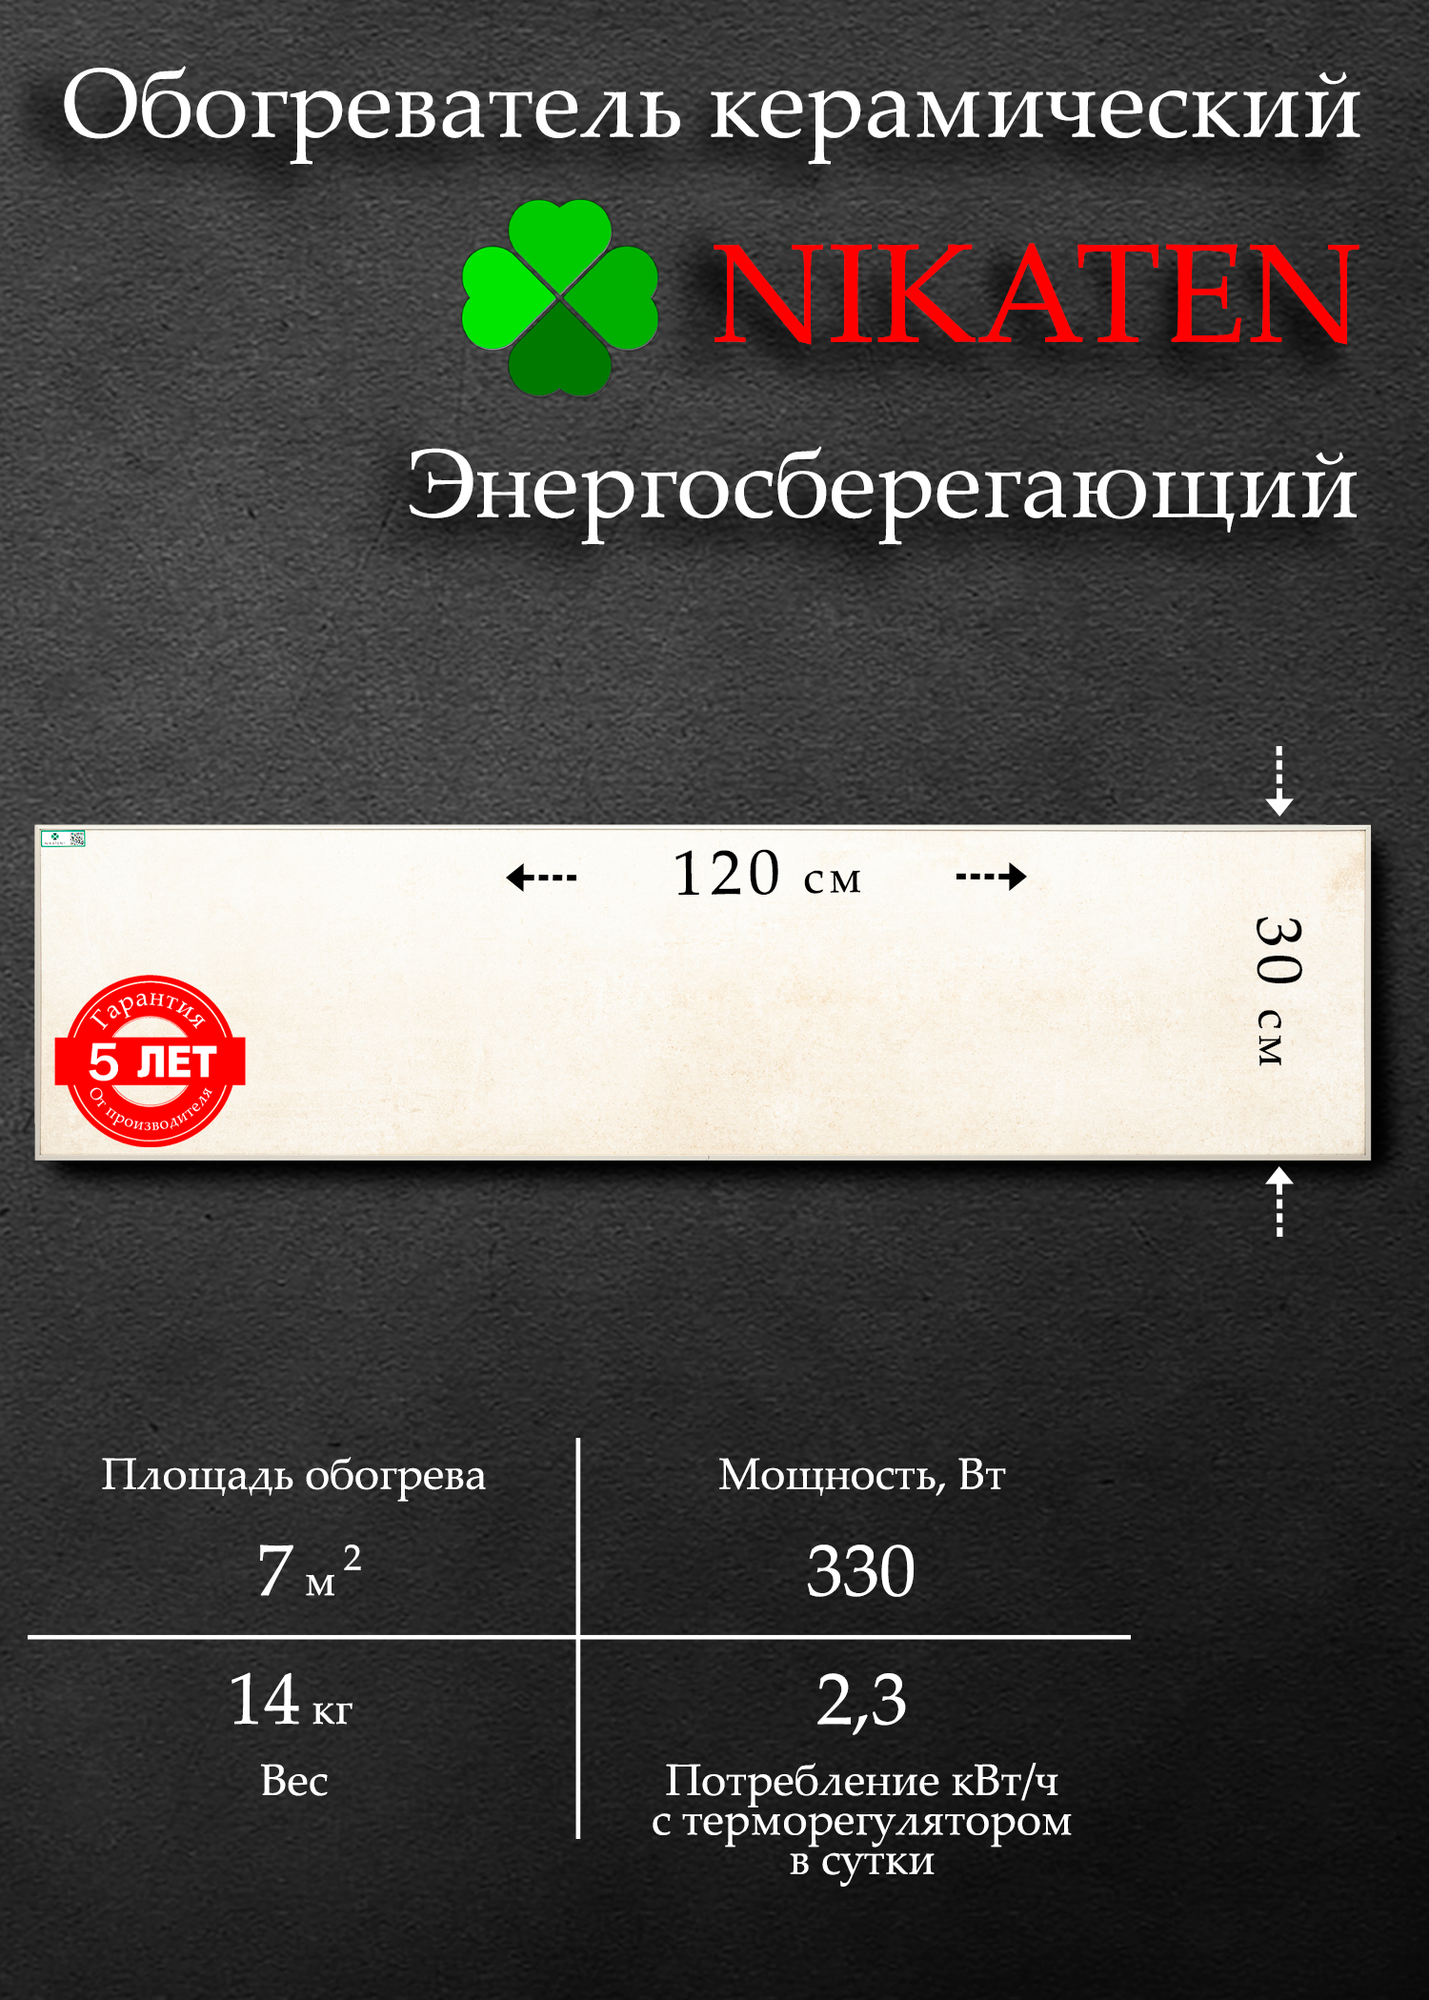 Обогреватель для дома керамический Nikaten 330/1 (330 Вт)